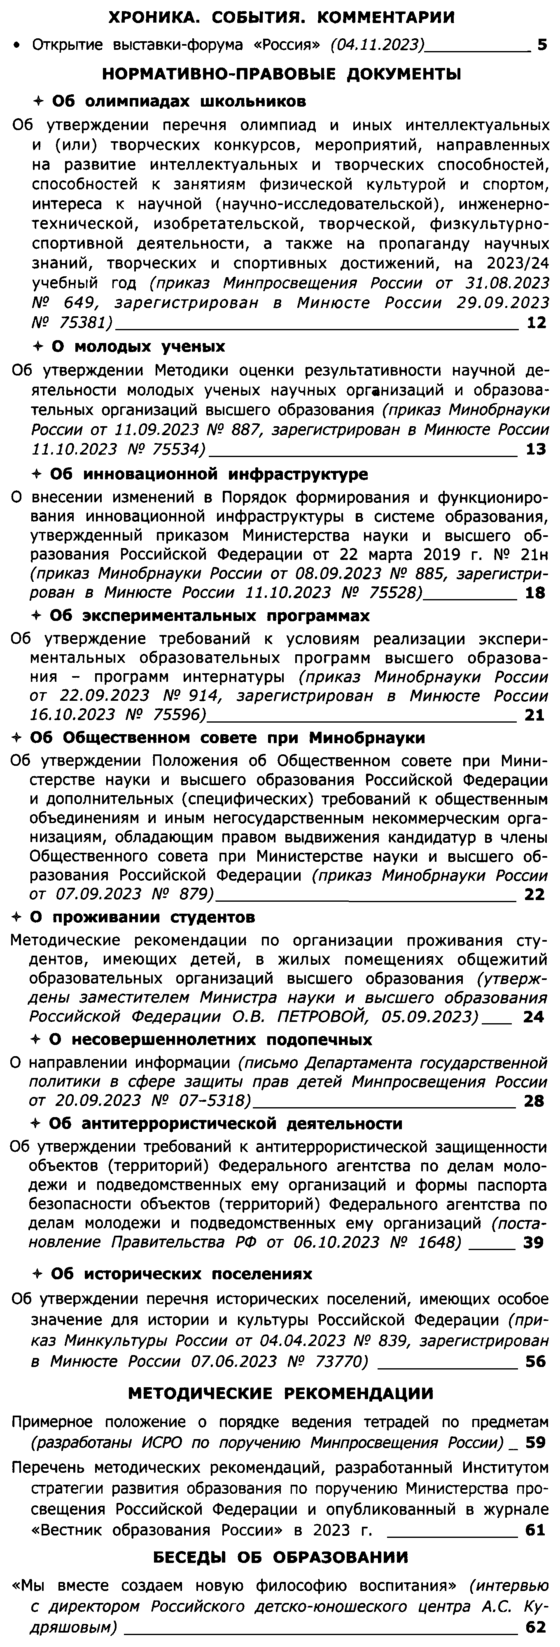 Вестник образования России 2023-23.png